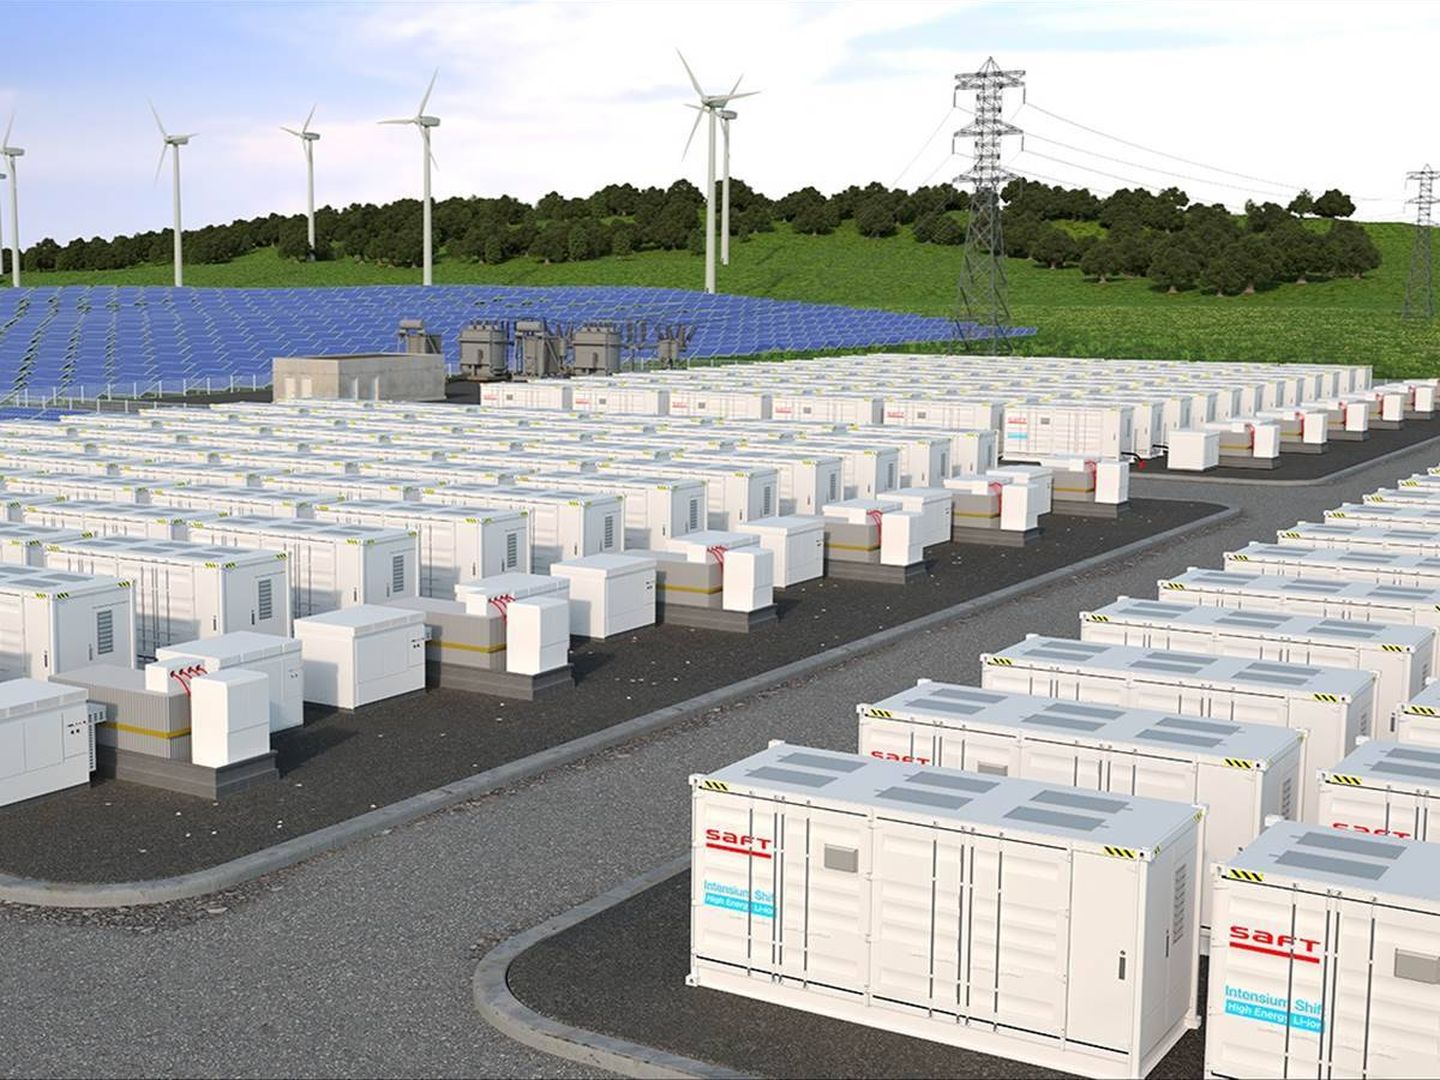 La nueva tecnología se aplicará también al almacenamiento estacionario de energía de Saft.